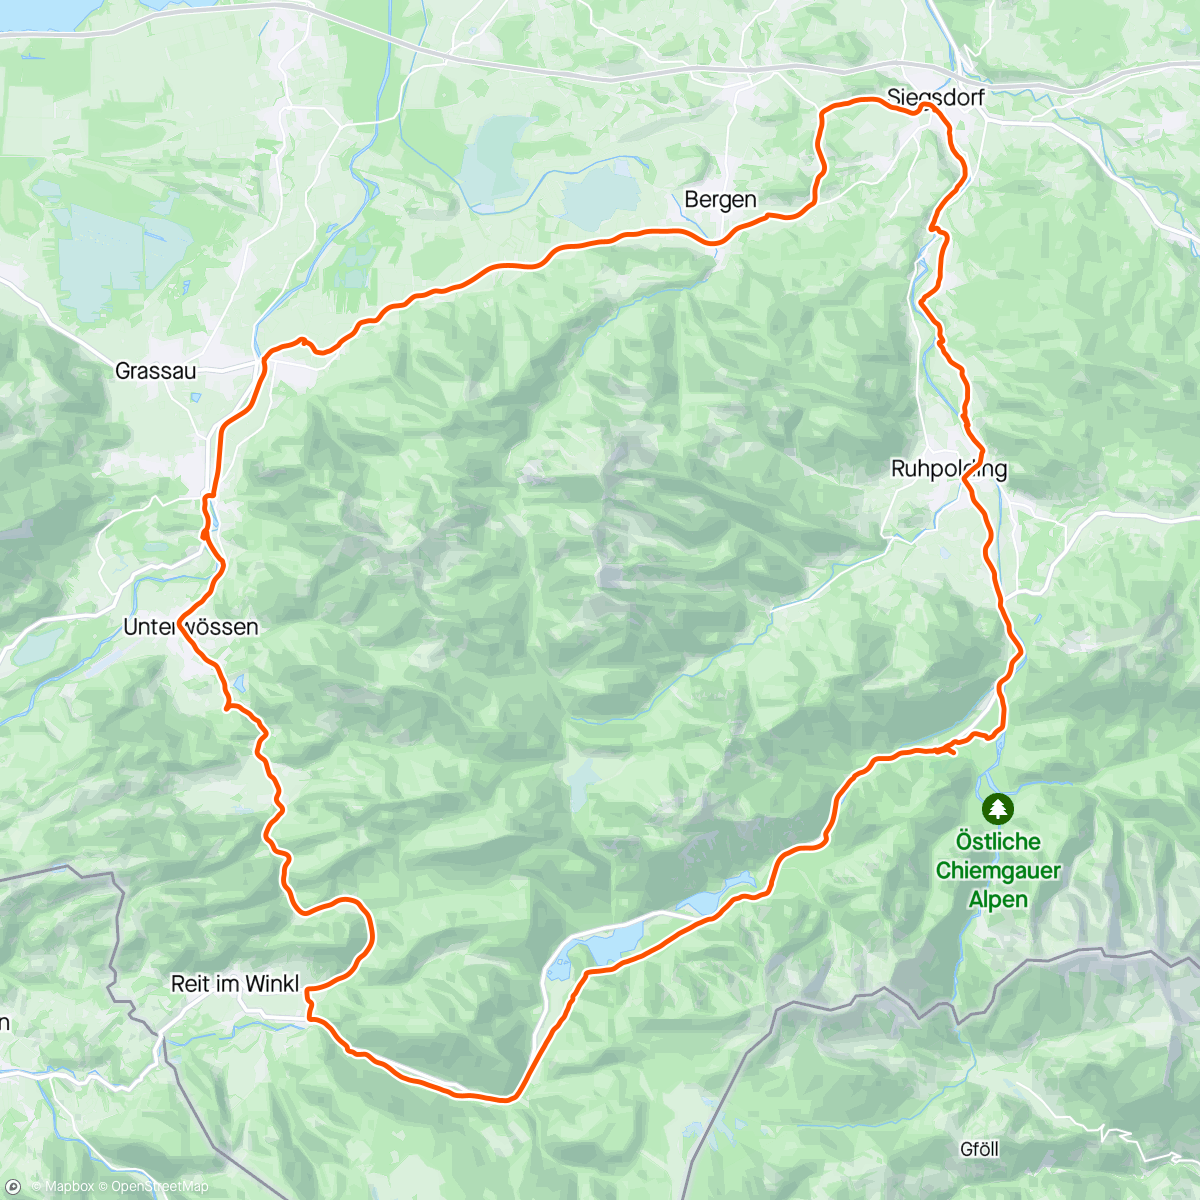 「Schöne Tour zum Abschluss」活動的地圖